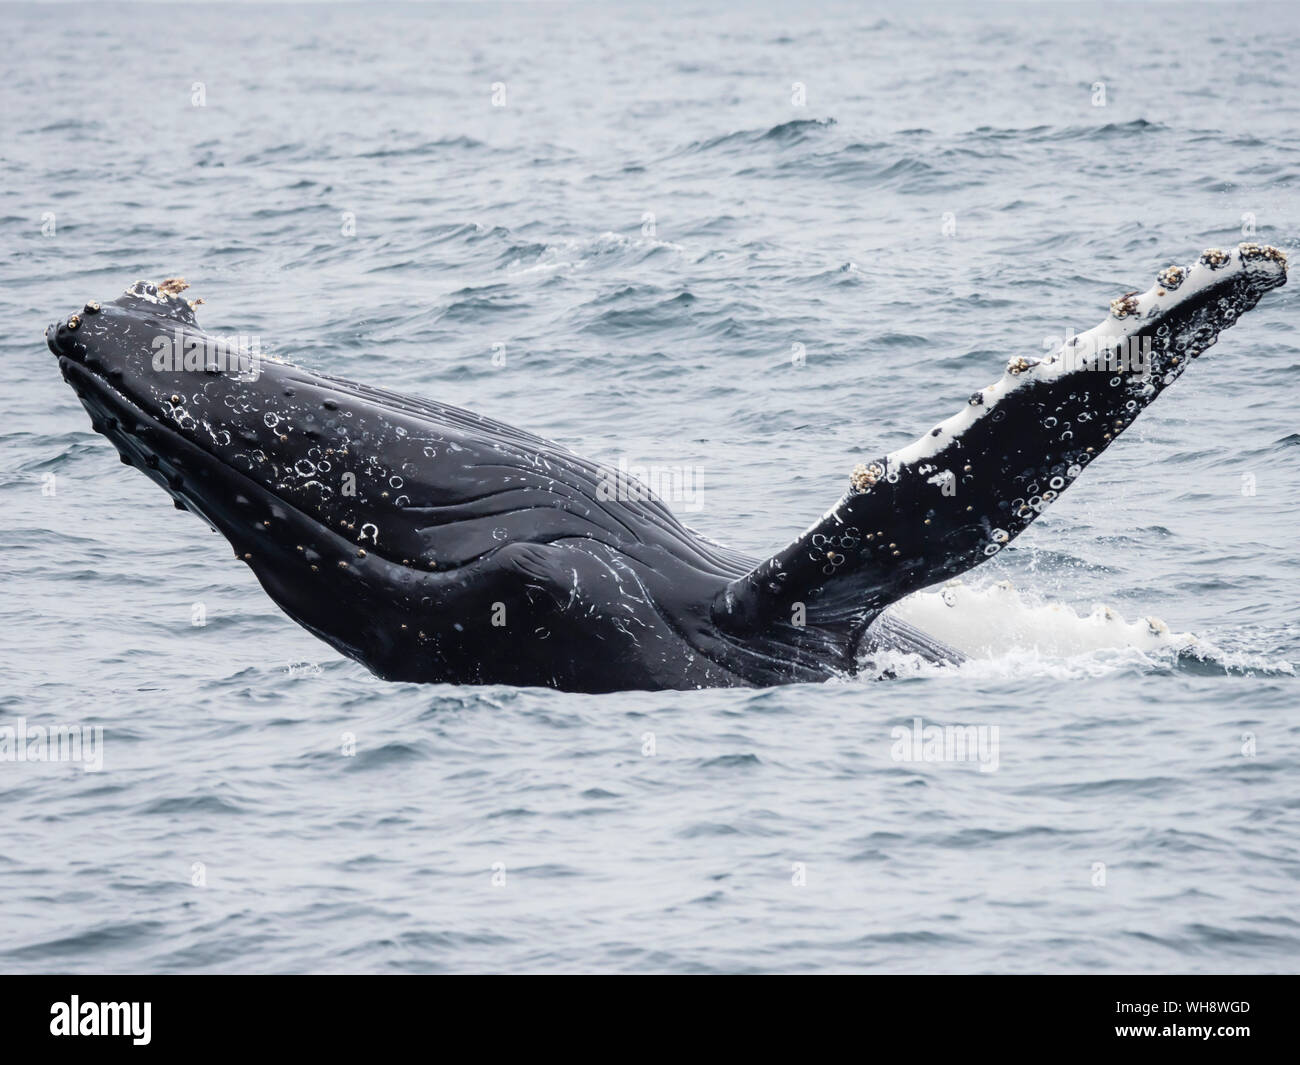 Baleine à bosse (Megaptera novaeangliae) violer dans le sanctuaire marin national de la baie de Monterey, Californie, États-Unis d'Amérique, Amérique du Nord Banque D'Images